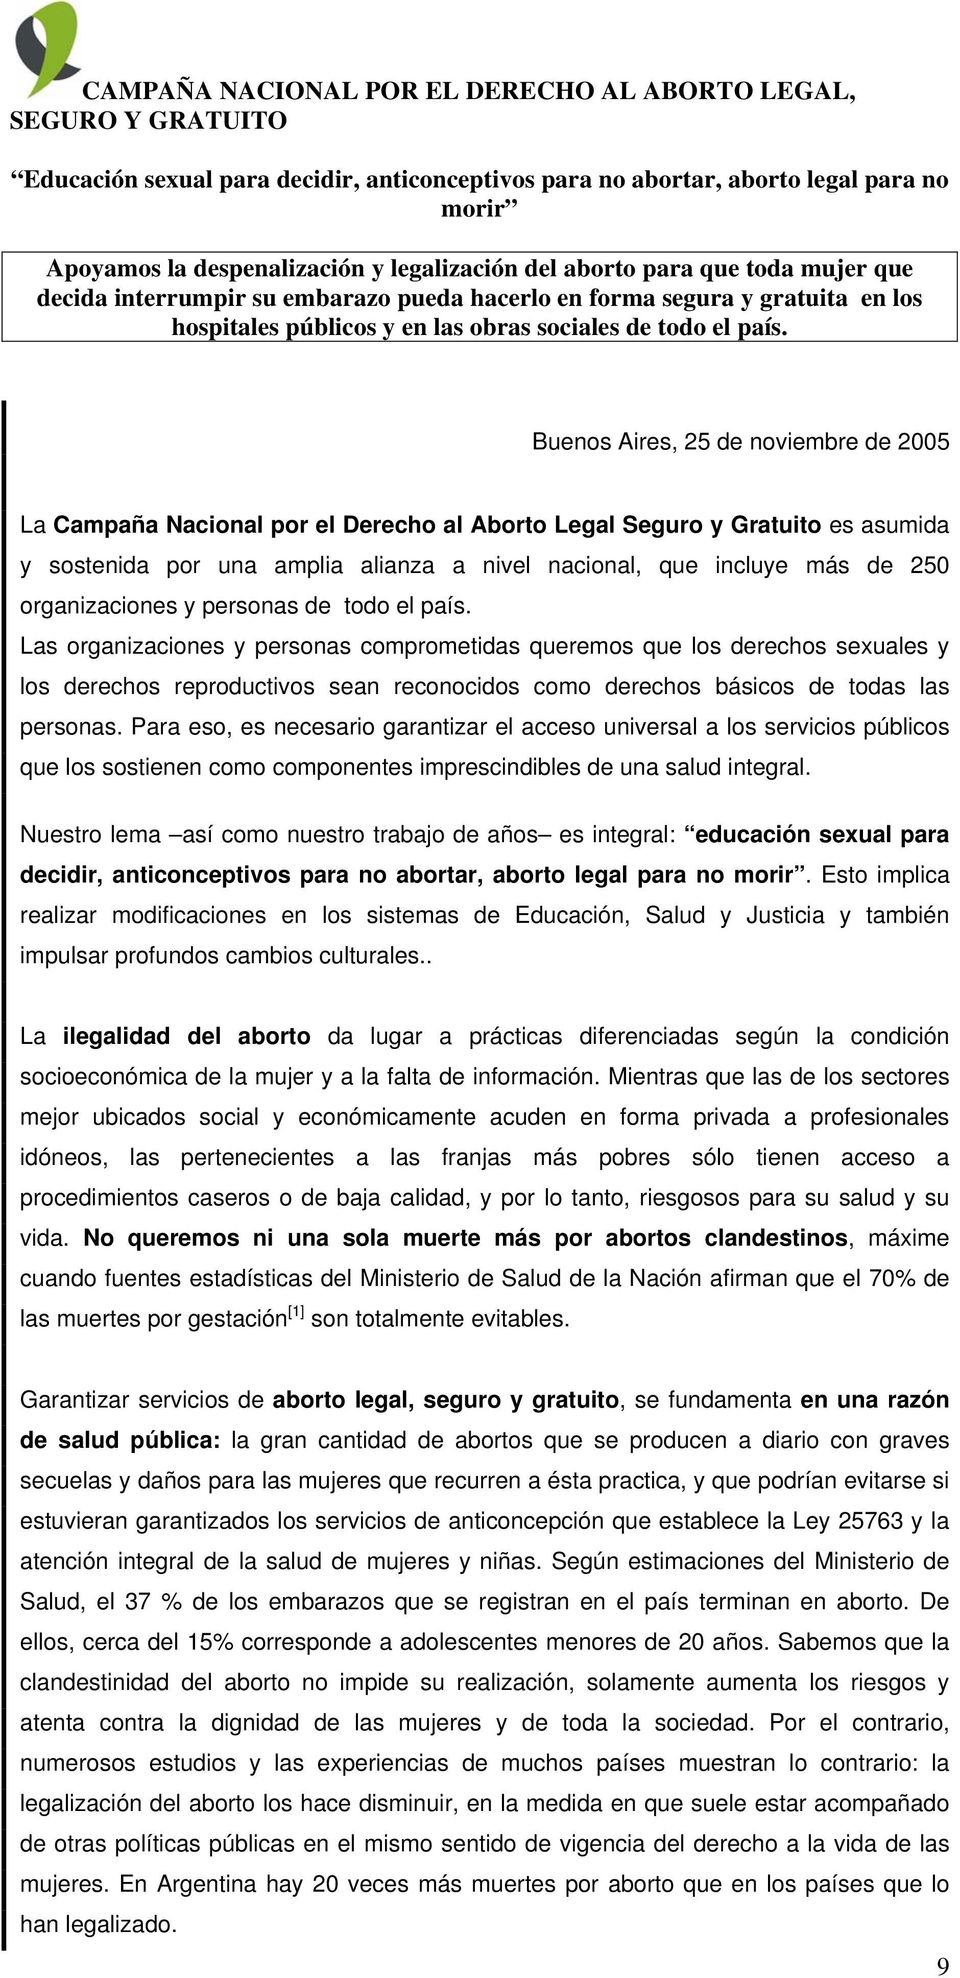 Buenos Aires, 25 de noviembre de 2005 La Campaña Nacional por el Derecho al Aborto Legal Seguro y Gratuito es asumida y sostenida por una amplia alianza a nivel nacional, que incluye más de 250